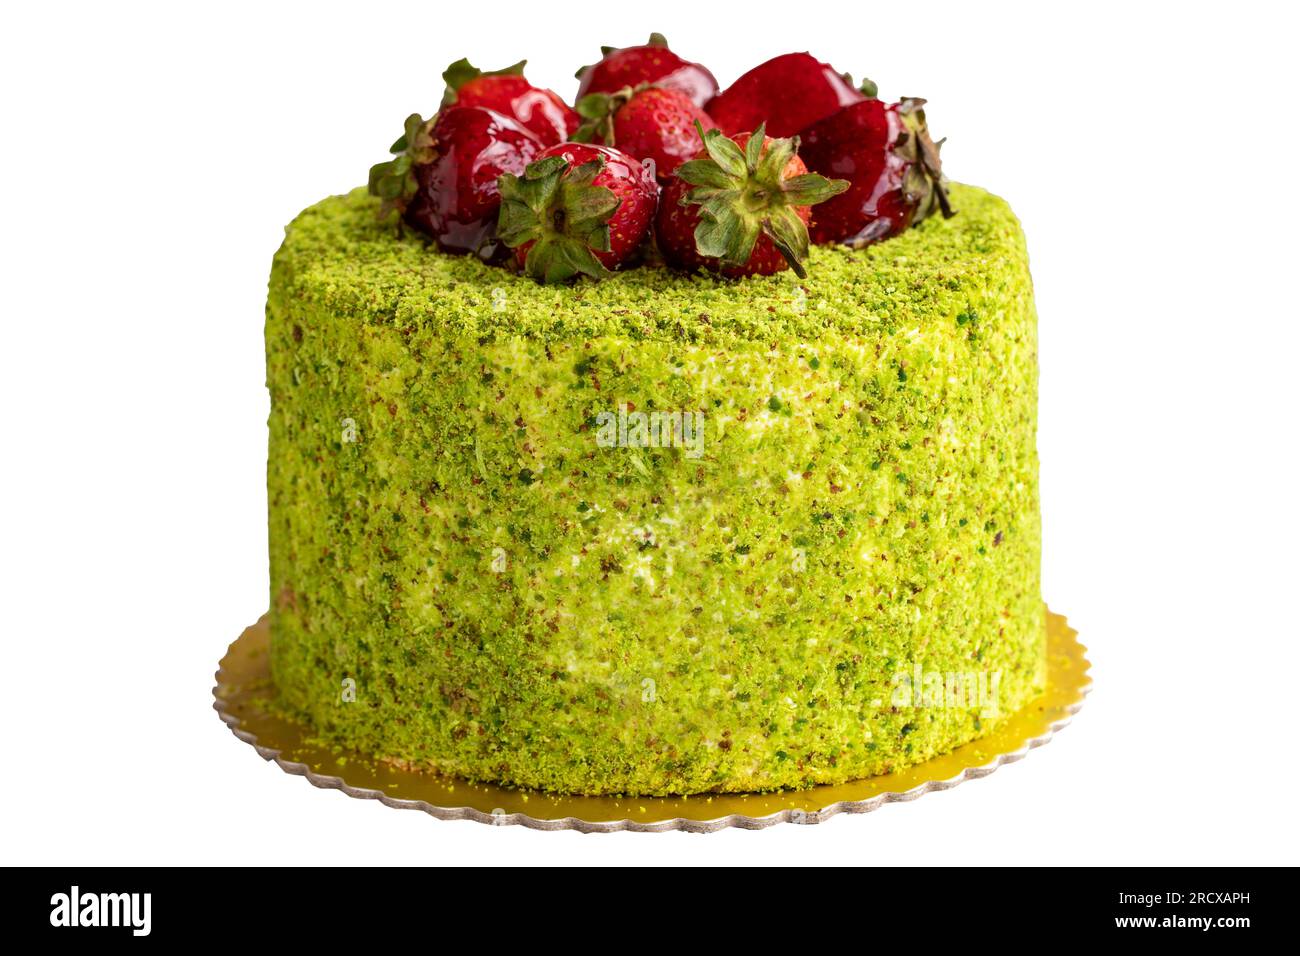 Pistachio and Strawberry Celebration Cake. Birthday cake isolated on white background Stock Photo